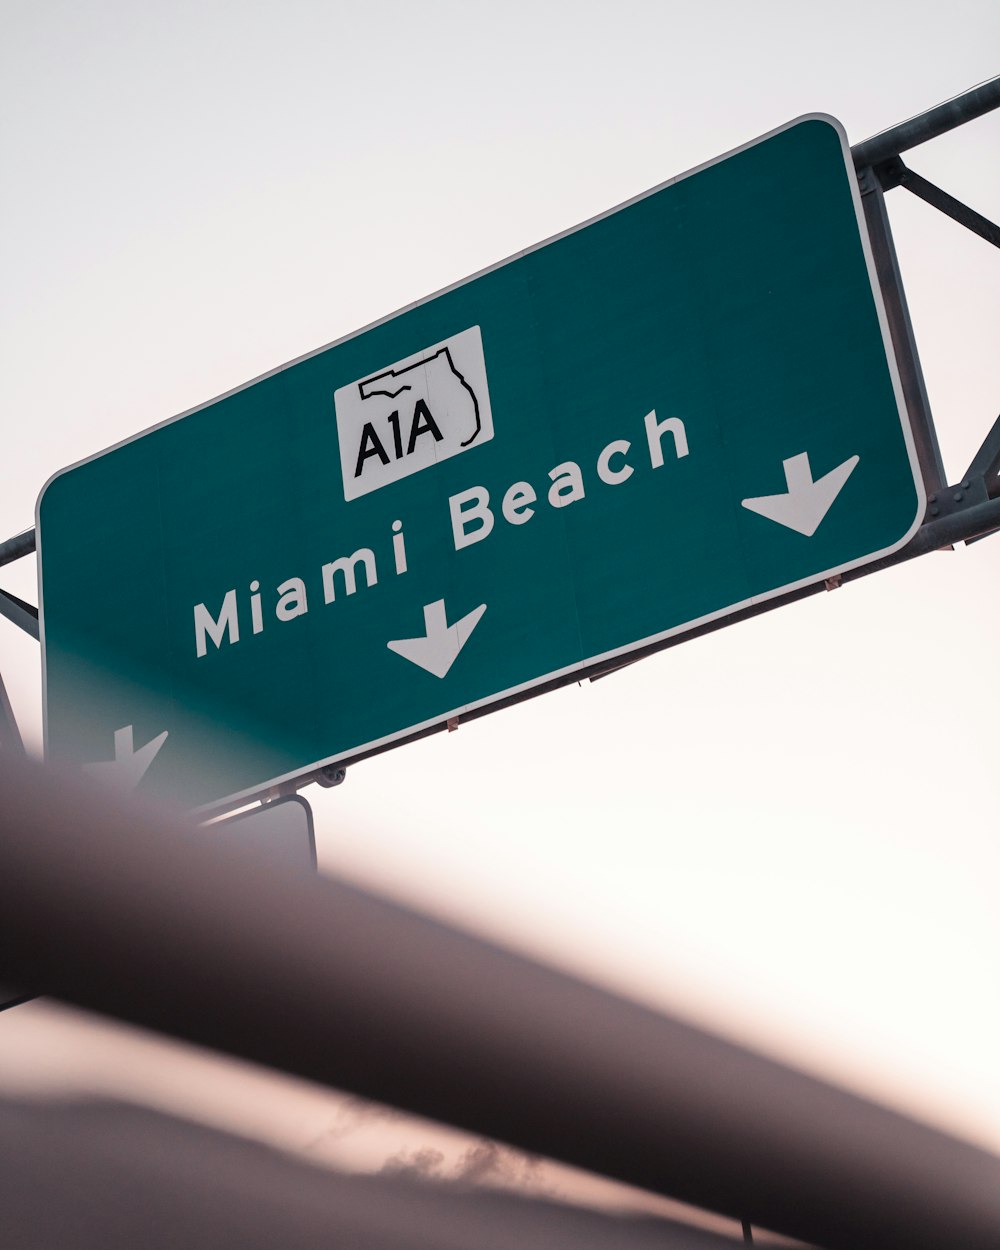 Cartello A1A Miami Beach